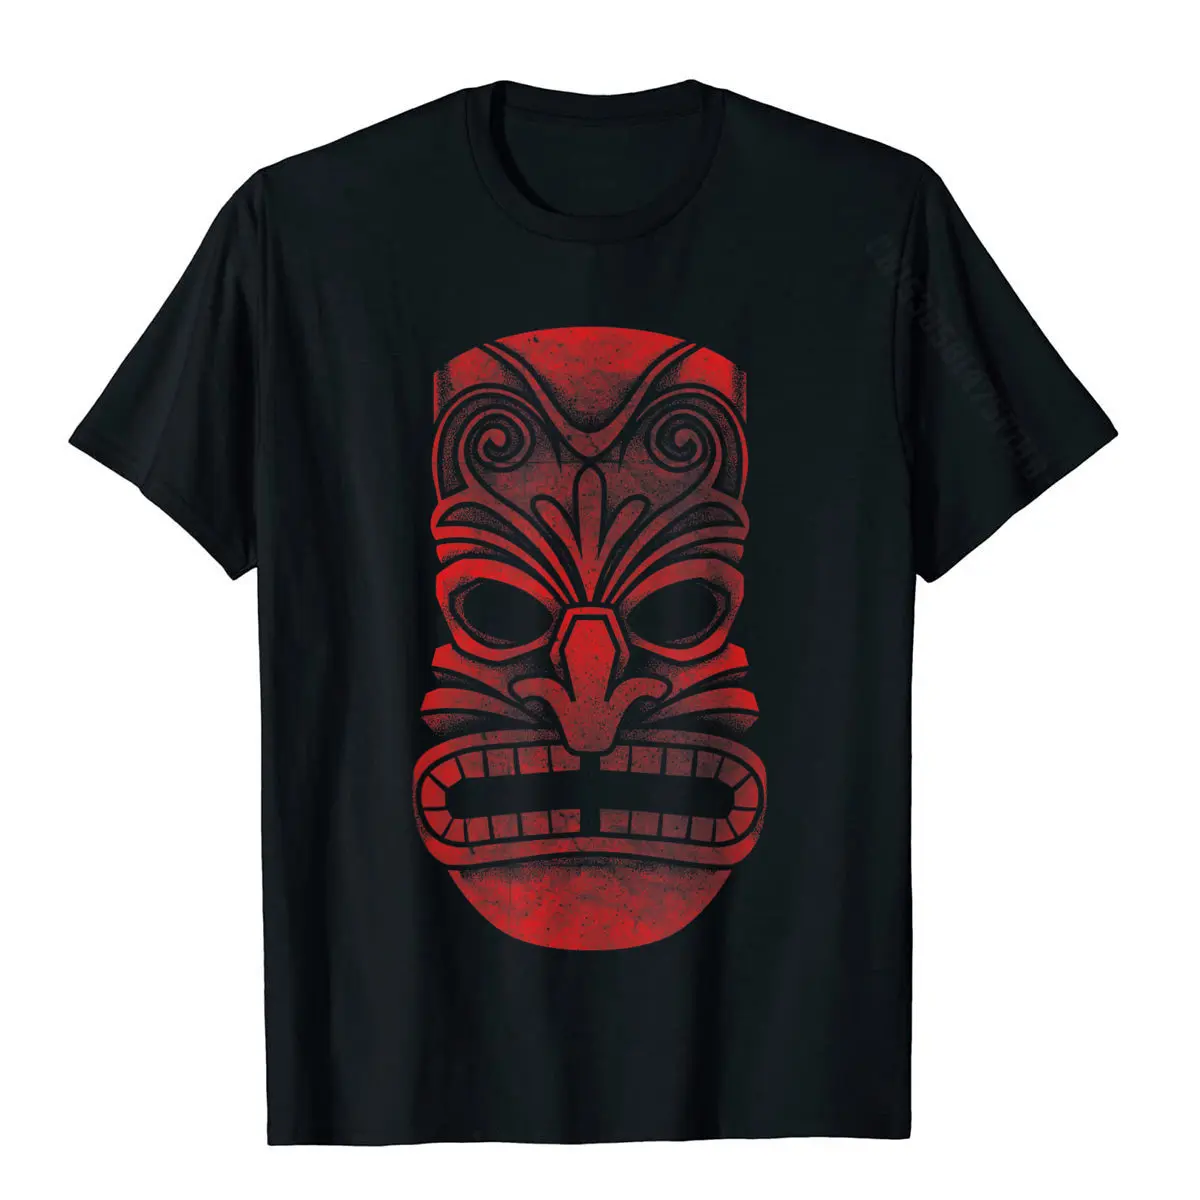 Retro Tiki divertente vacanza hawaiana Luau Tiki Hawaii Pun regalo T-Shirt divertente uomo T shirt famiglia Tees cotone stampato su